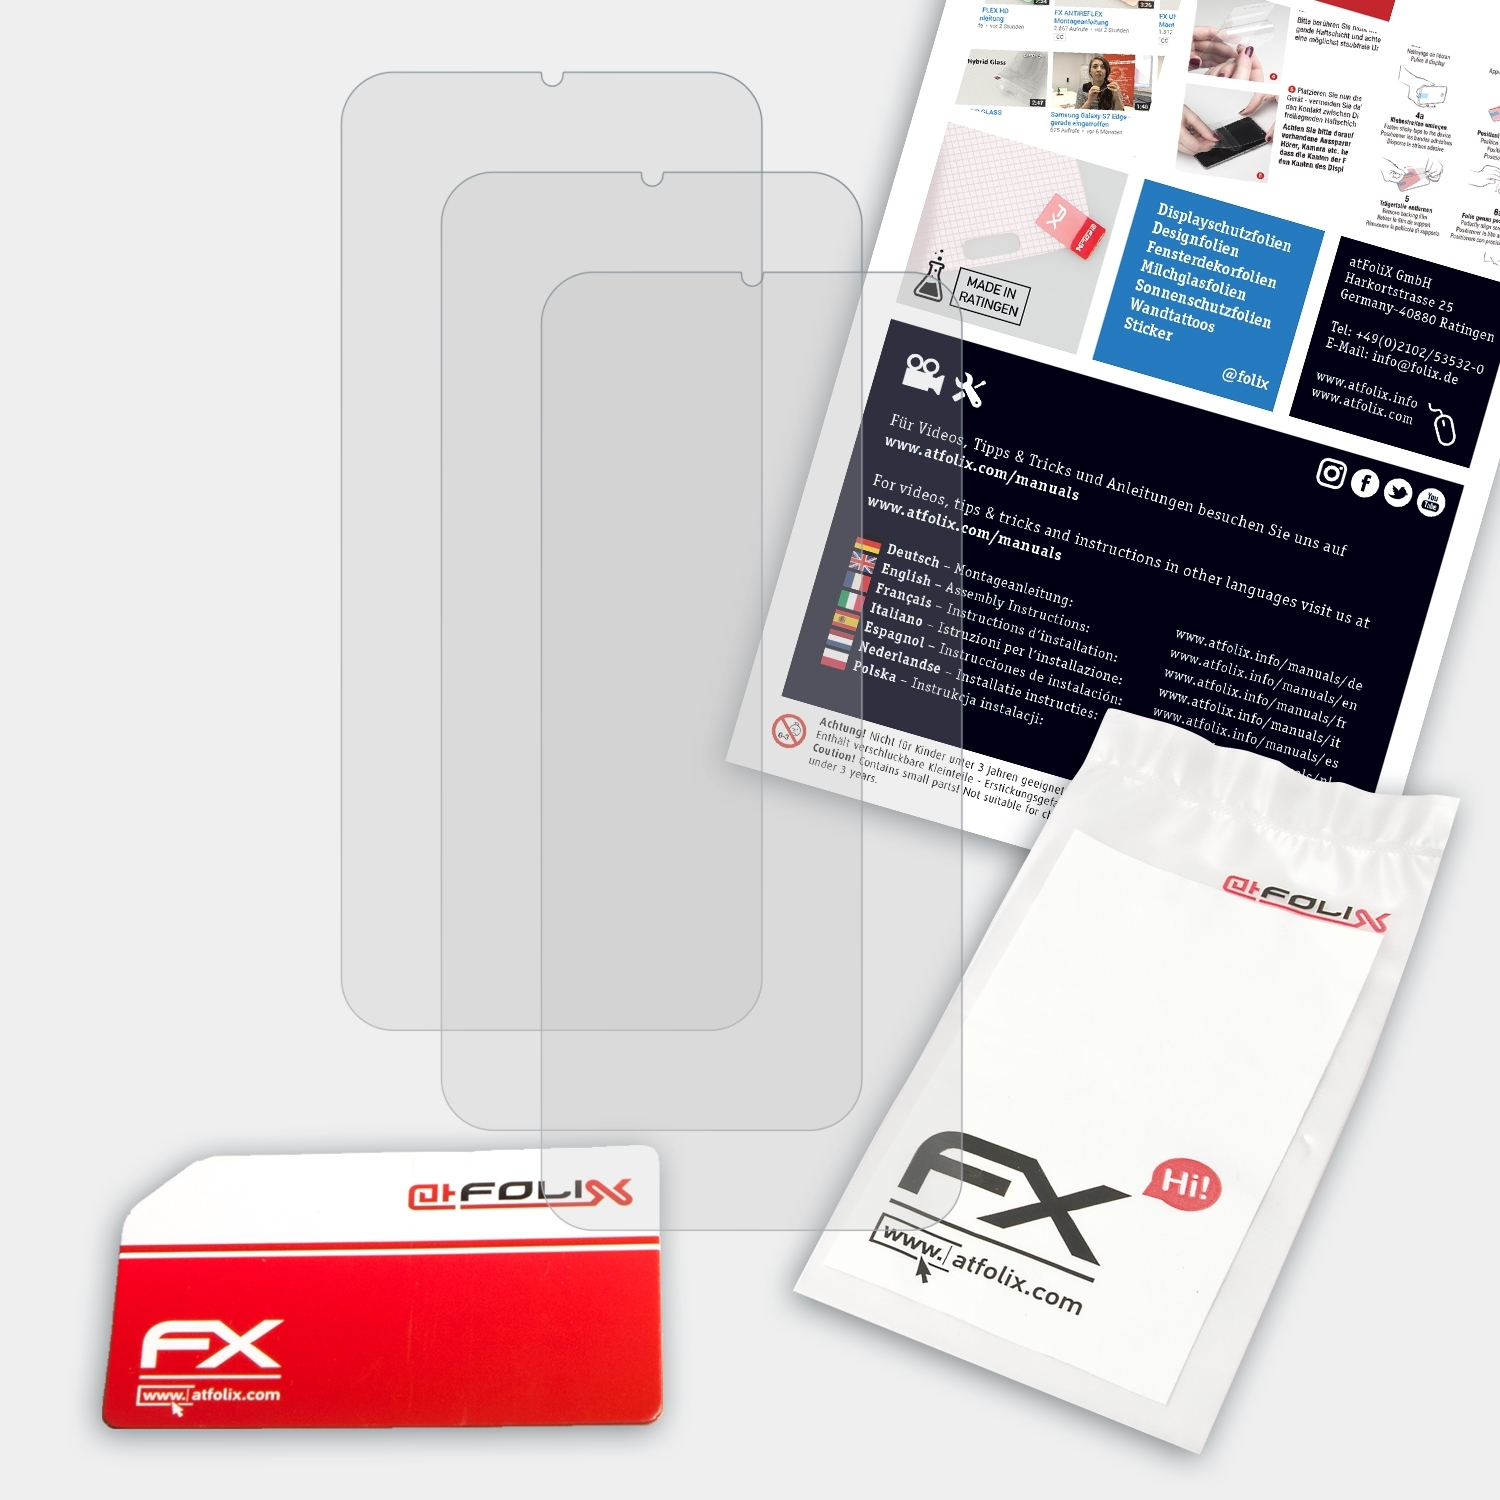 Displayschutz(für 3x Oppo C3) ATFOLIX FX-Antireflex Realme